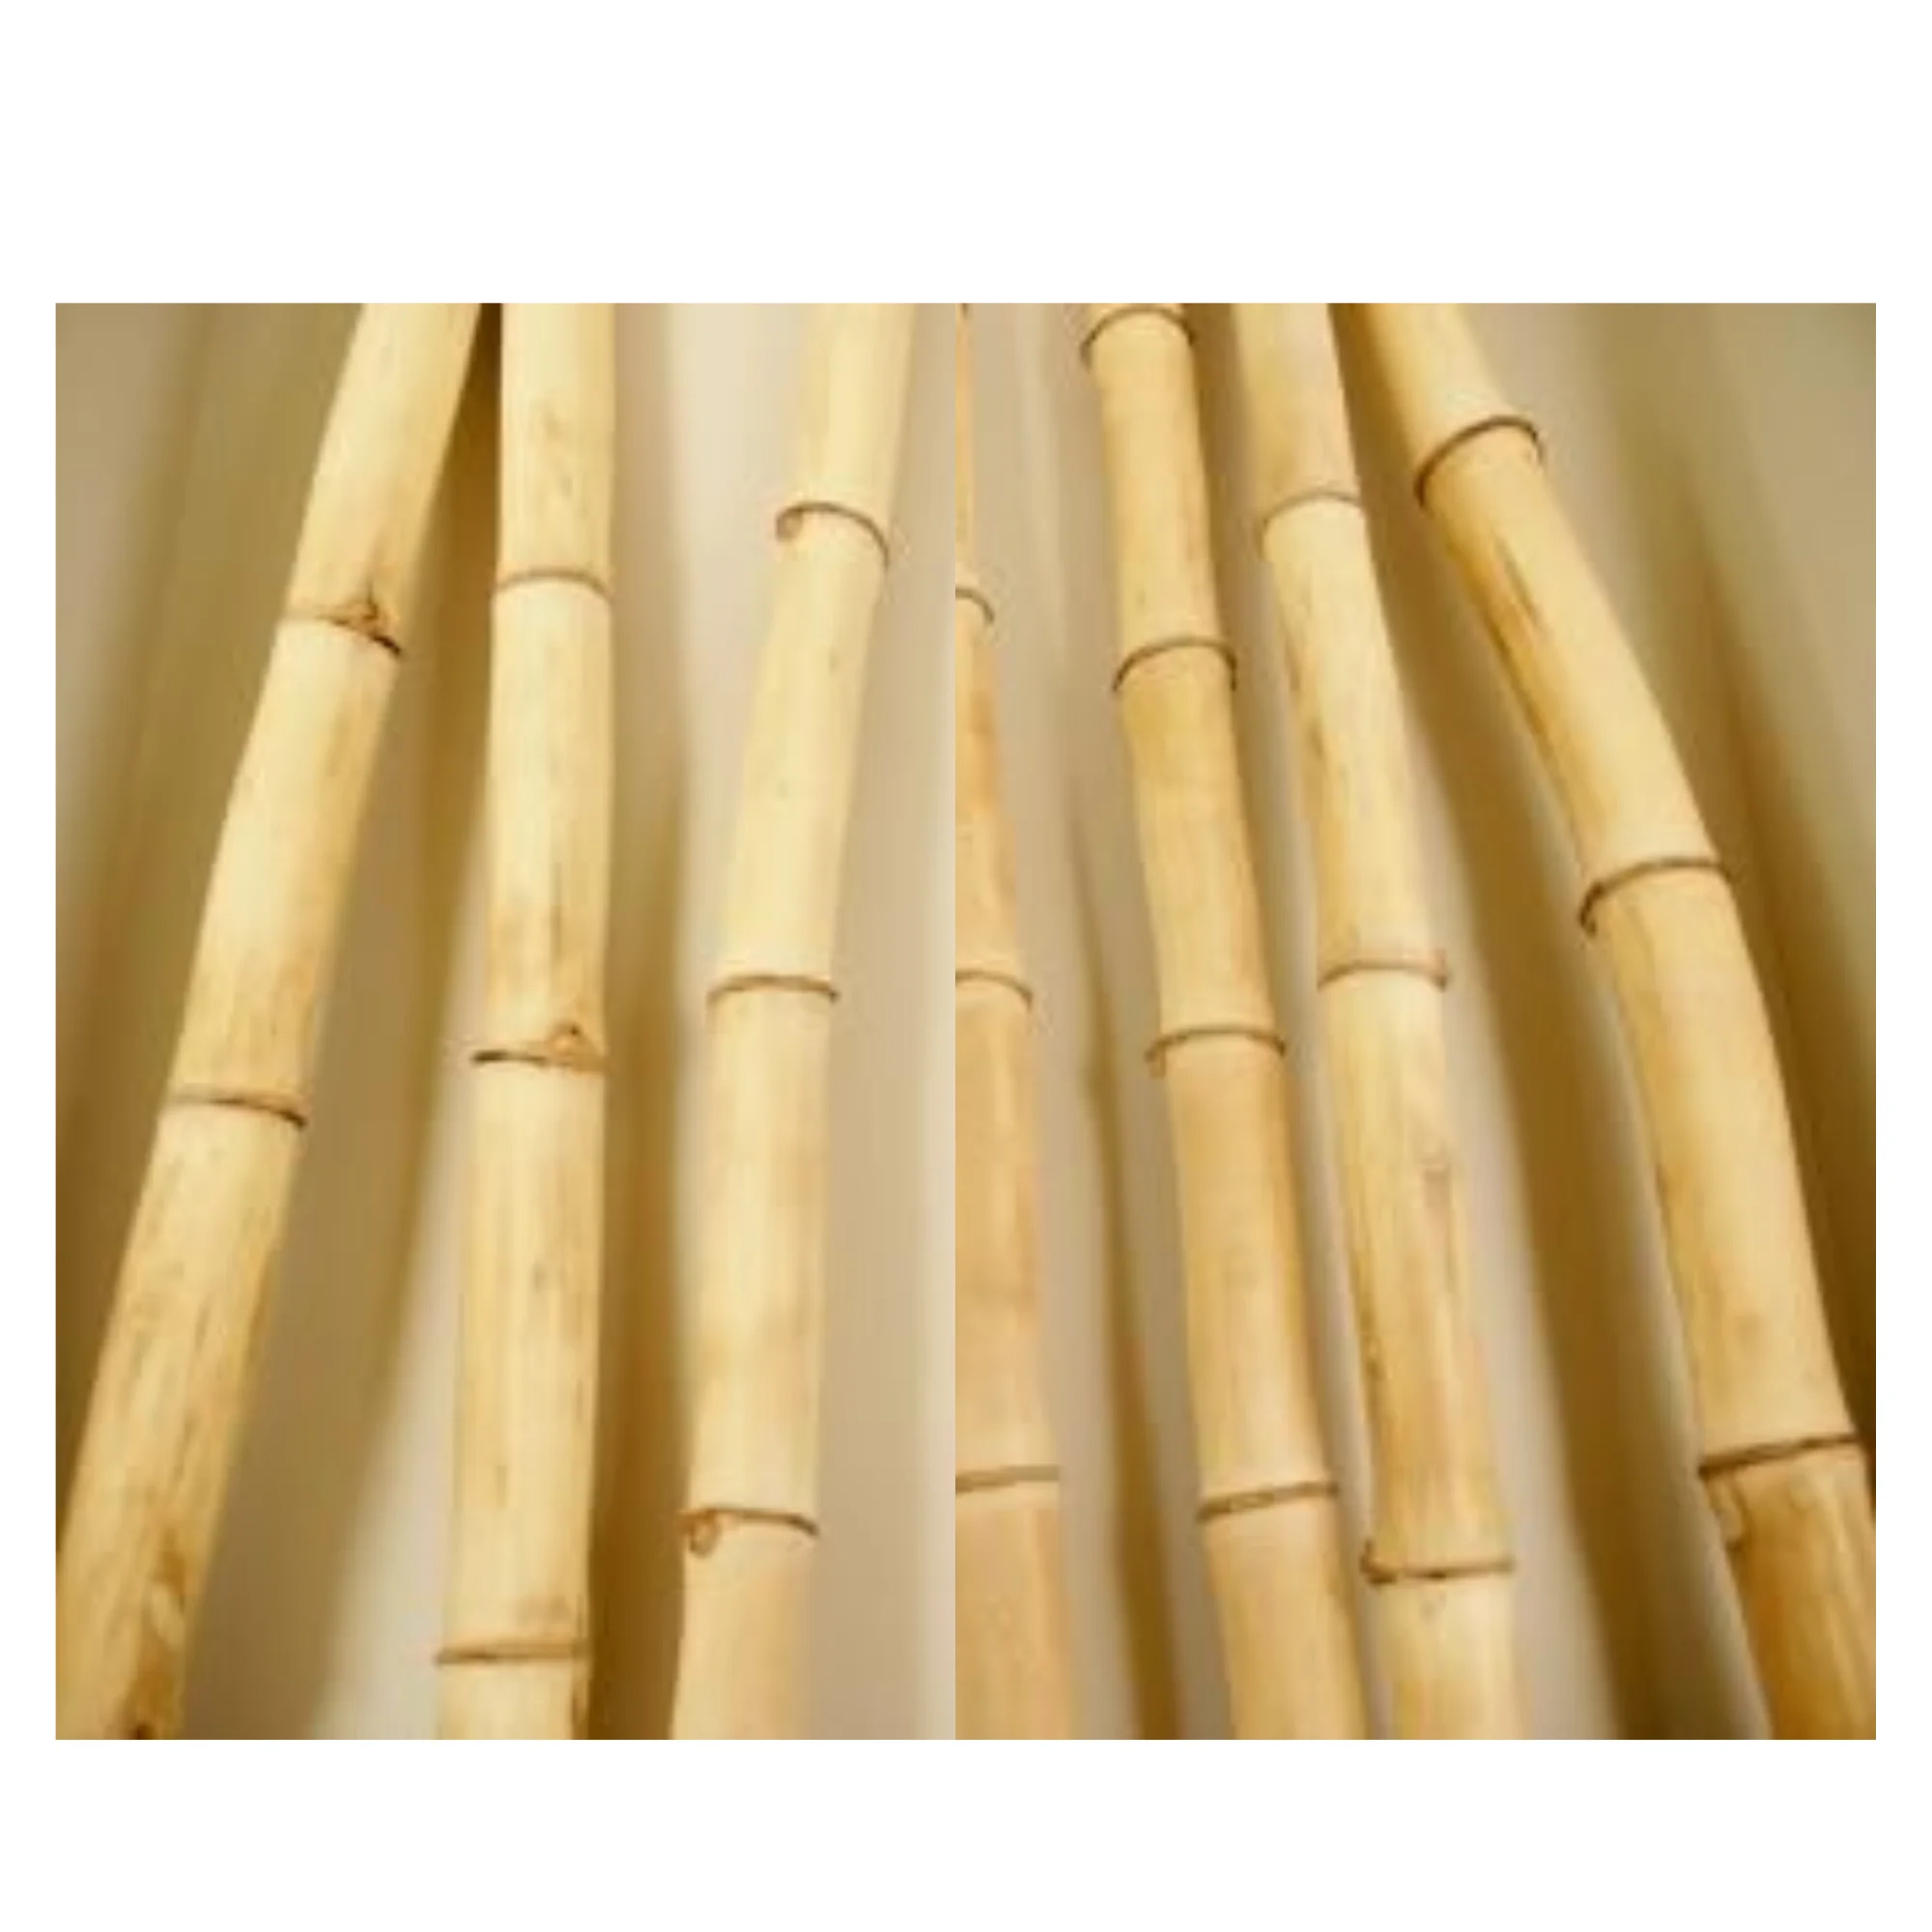 koper BES Oogverblindend Source Materiaal Bamboe Stokken Groothandelsprijs Ruwe Bamboestokken Voor  Tuinieren En Decoratie Bamboestok on m.alibaba.com